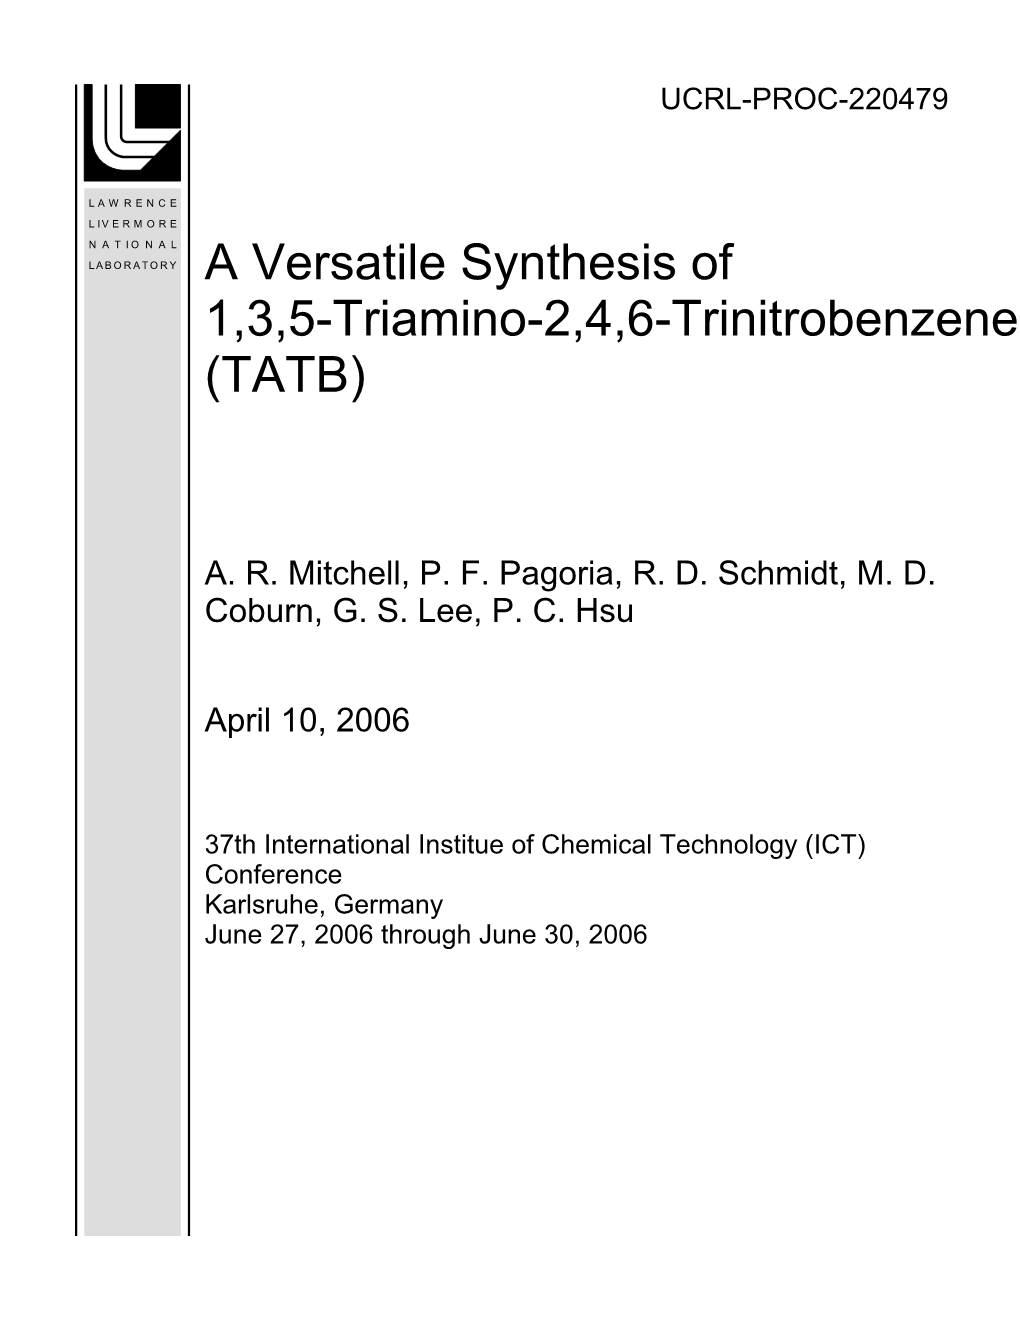 A Versatile Synthesis of 1,3,5-Triamino-2,4,6-Trinitrobenzene (TATB)